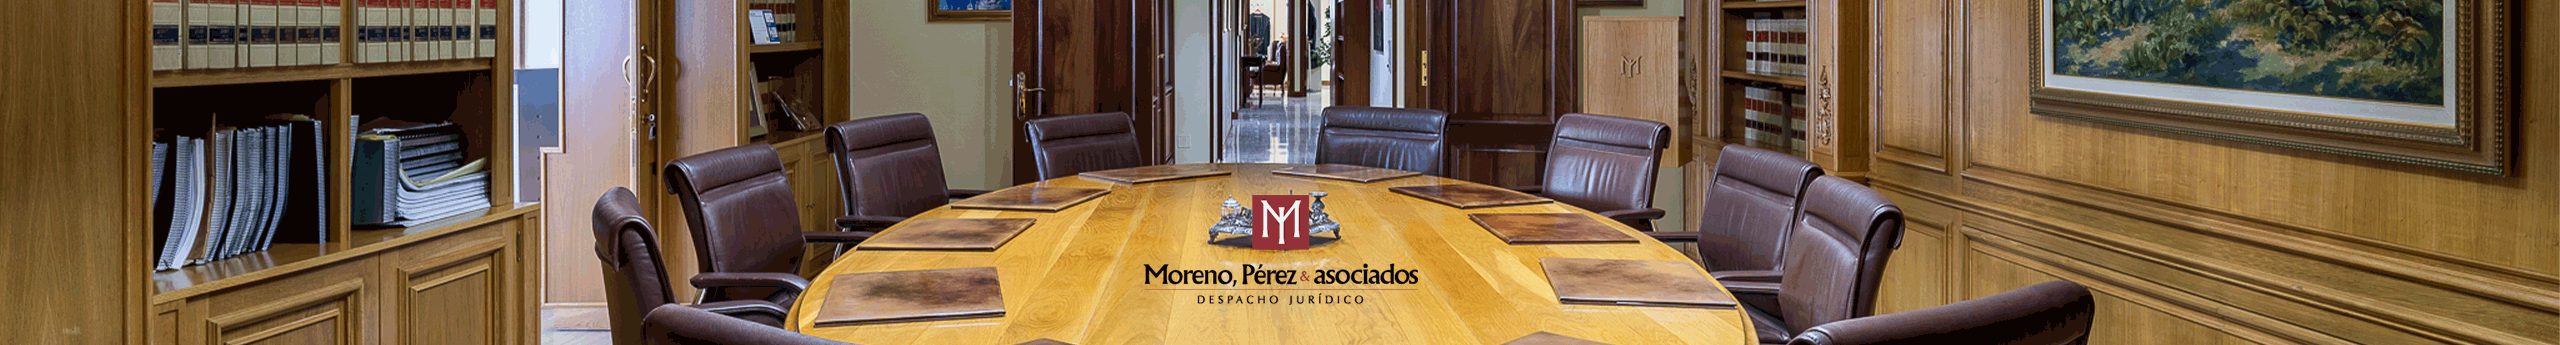 Moreno, Pérez & asociados.